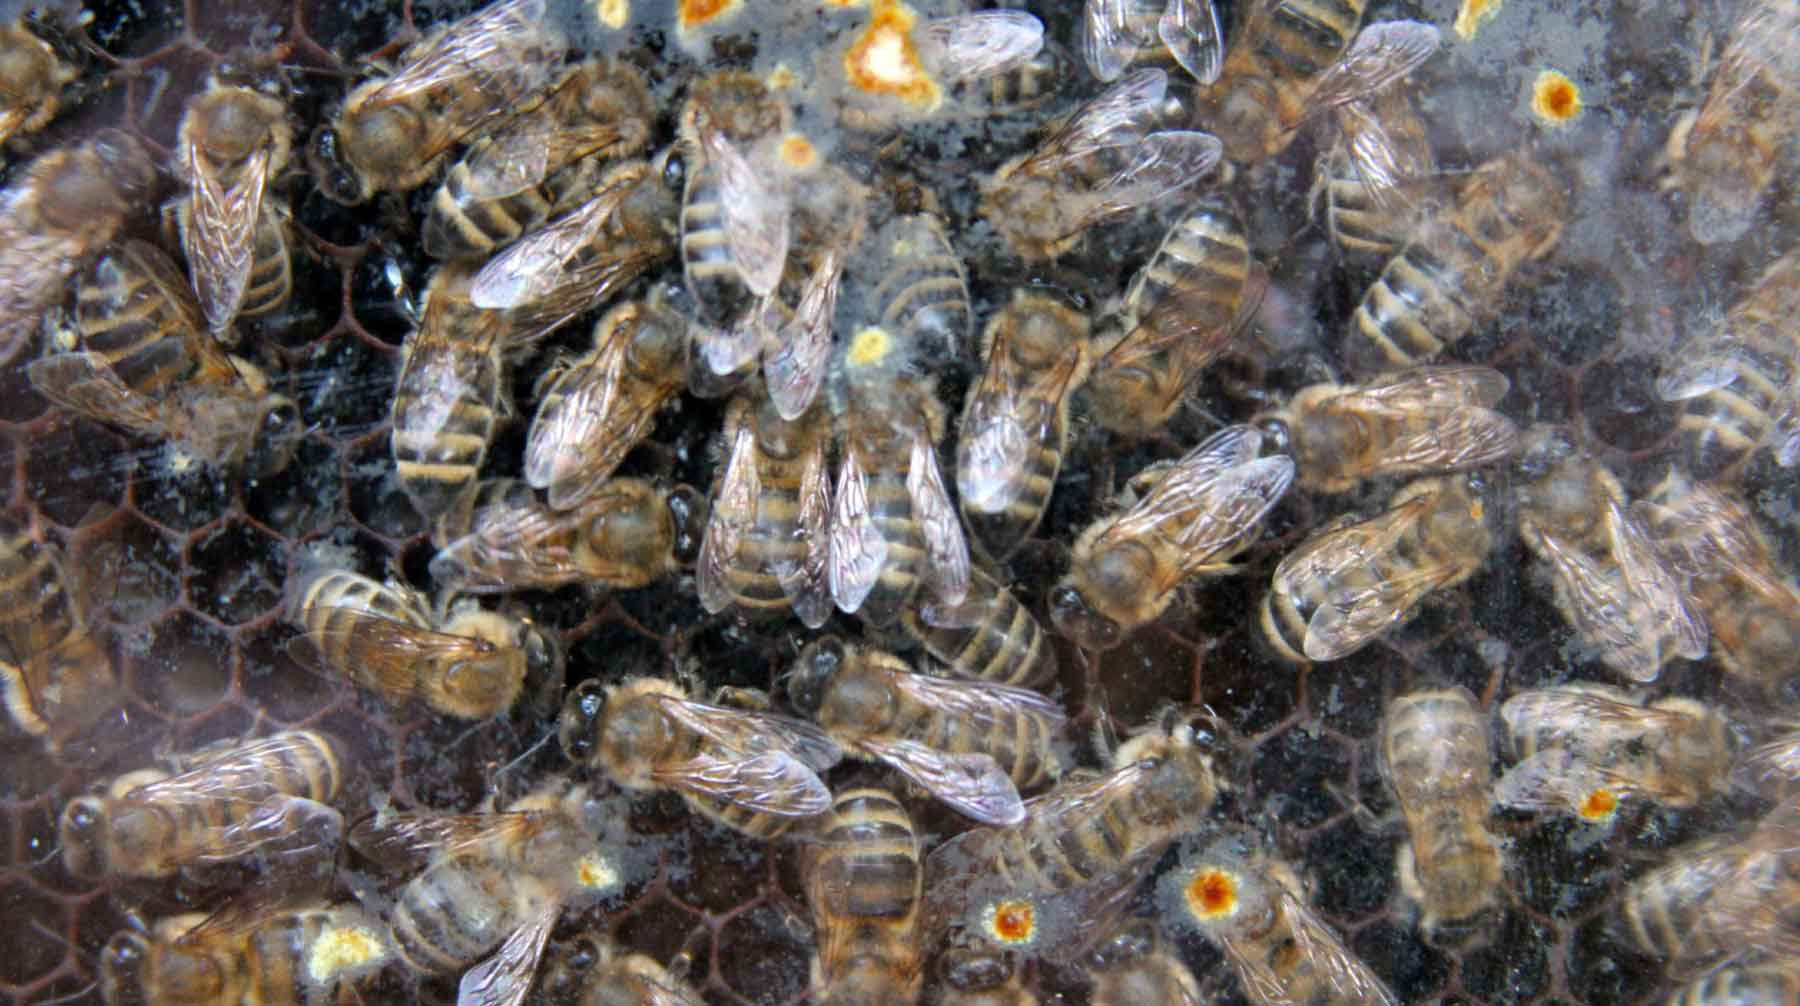 Dailystorm - Минэкономразвития отвергло обвинения в причастности к массовой гибели пчел